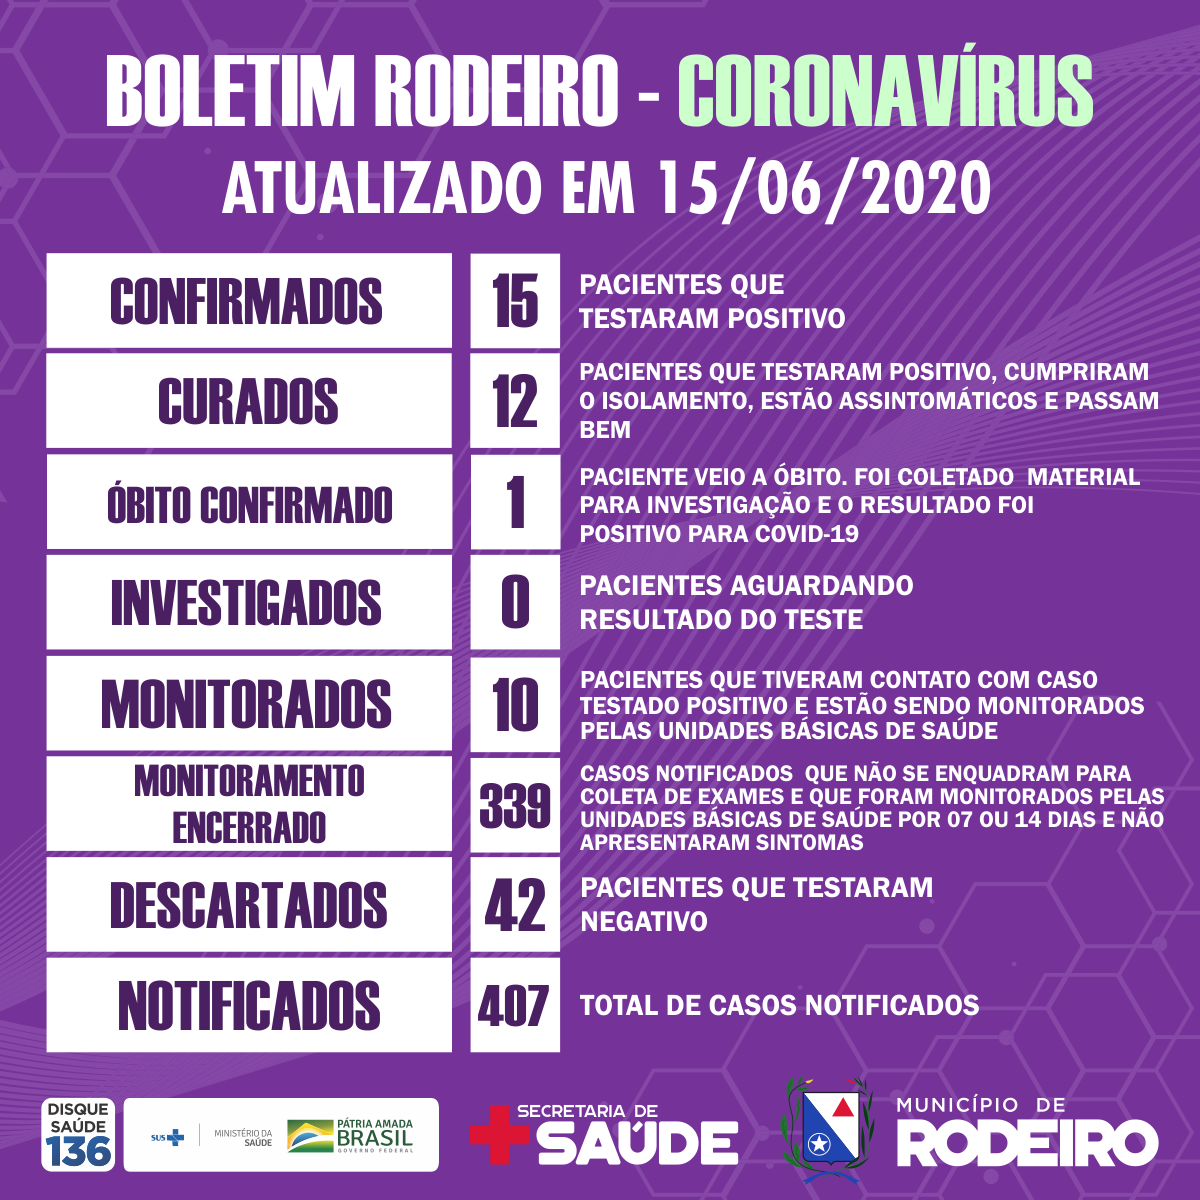 Boletim epidemiológico do Município de Rodeiro coronavírus, atualizado em 15/06/2020